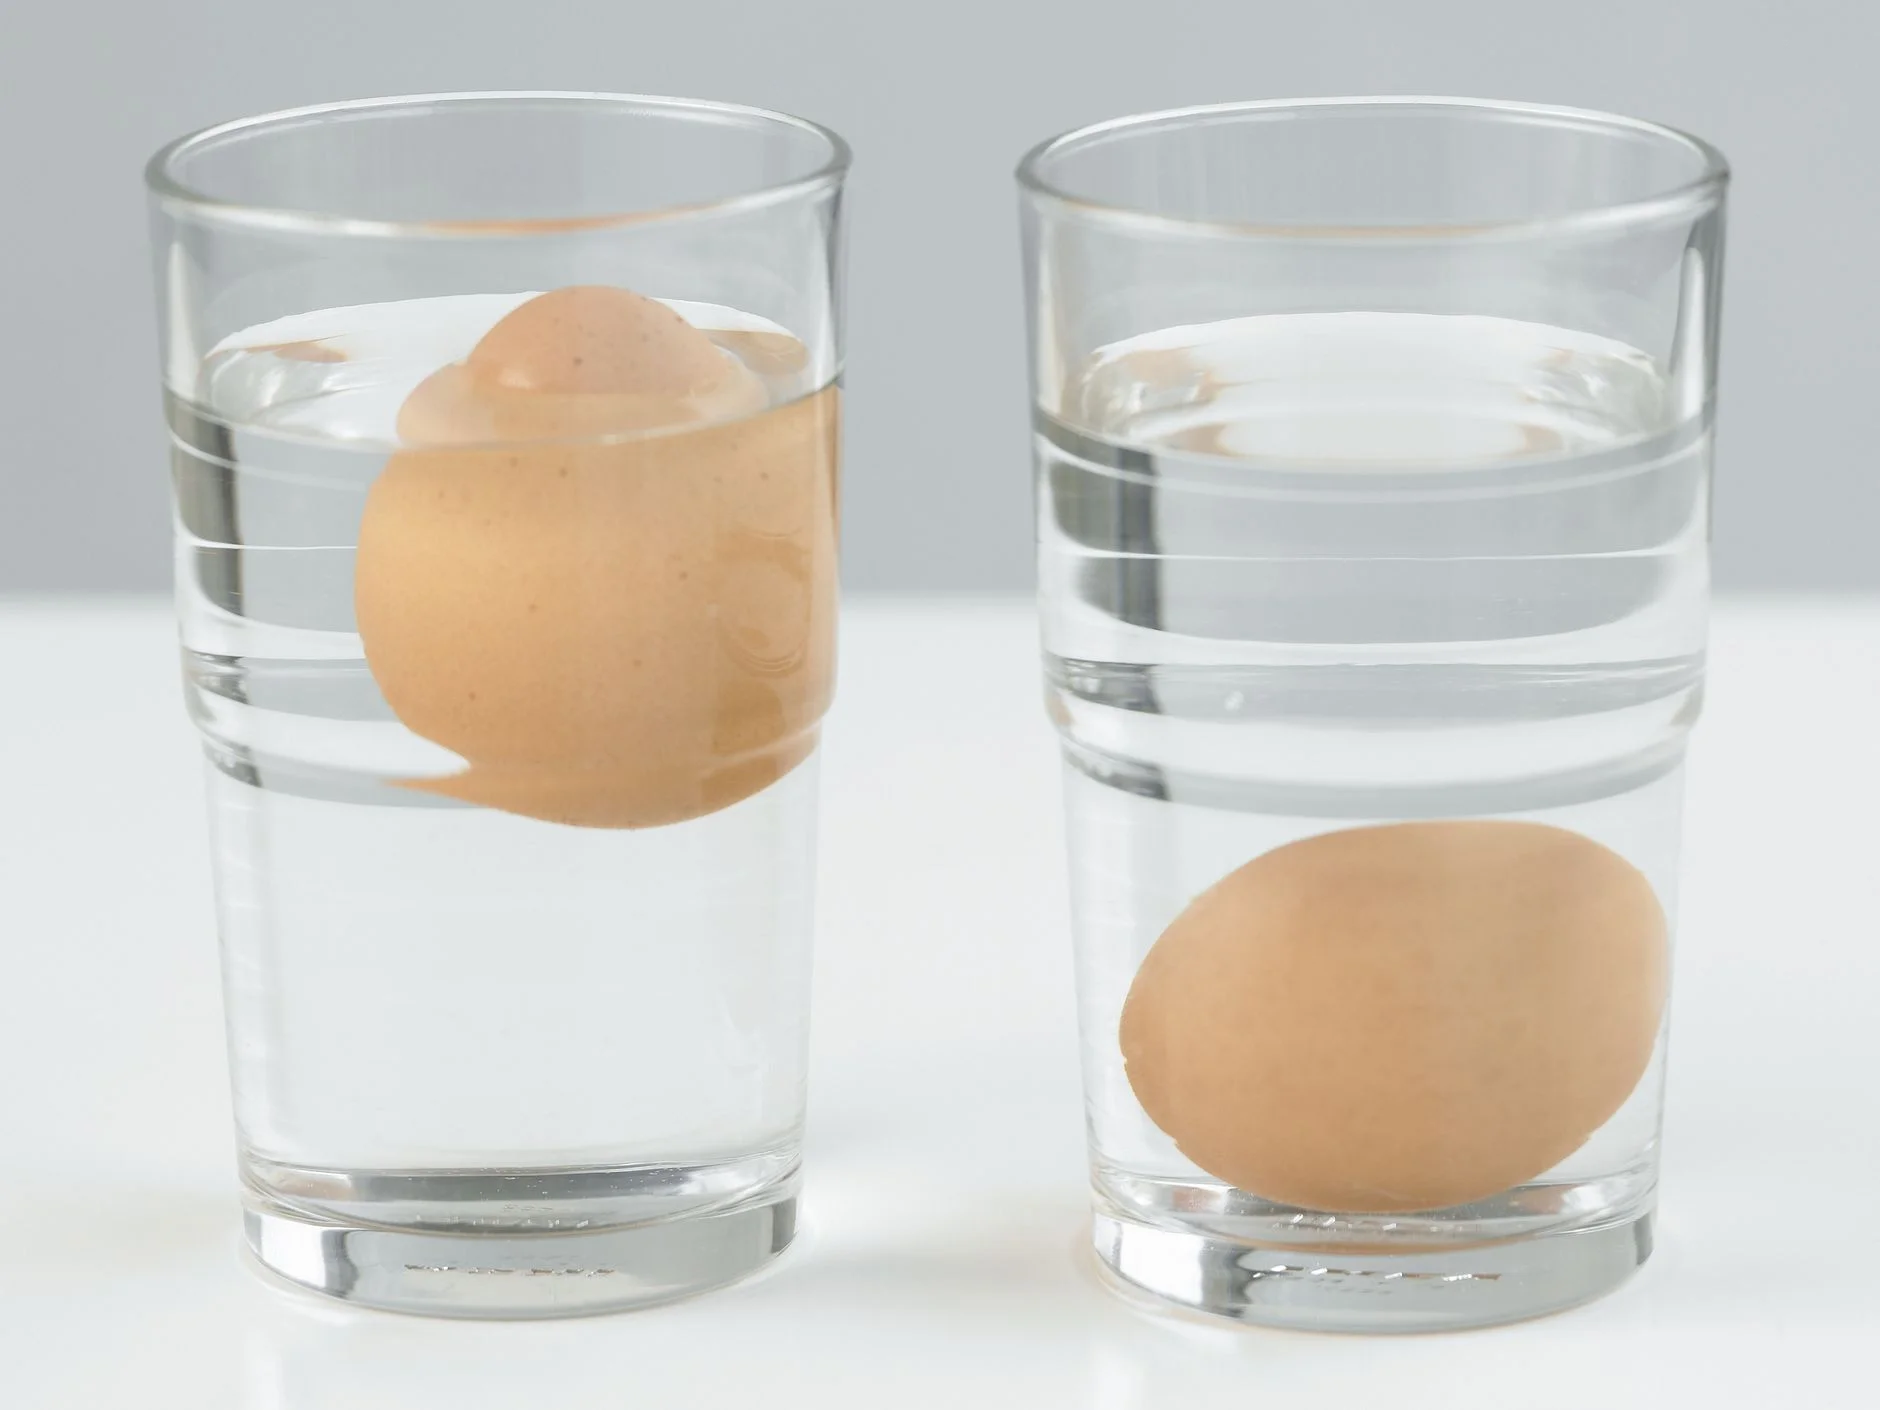 Cara mengecek telur